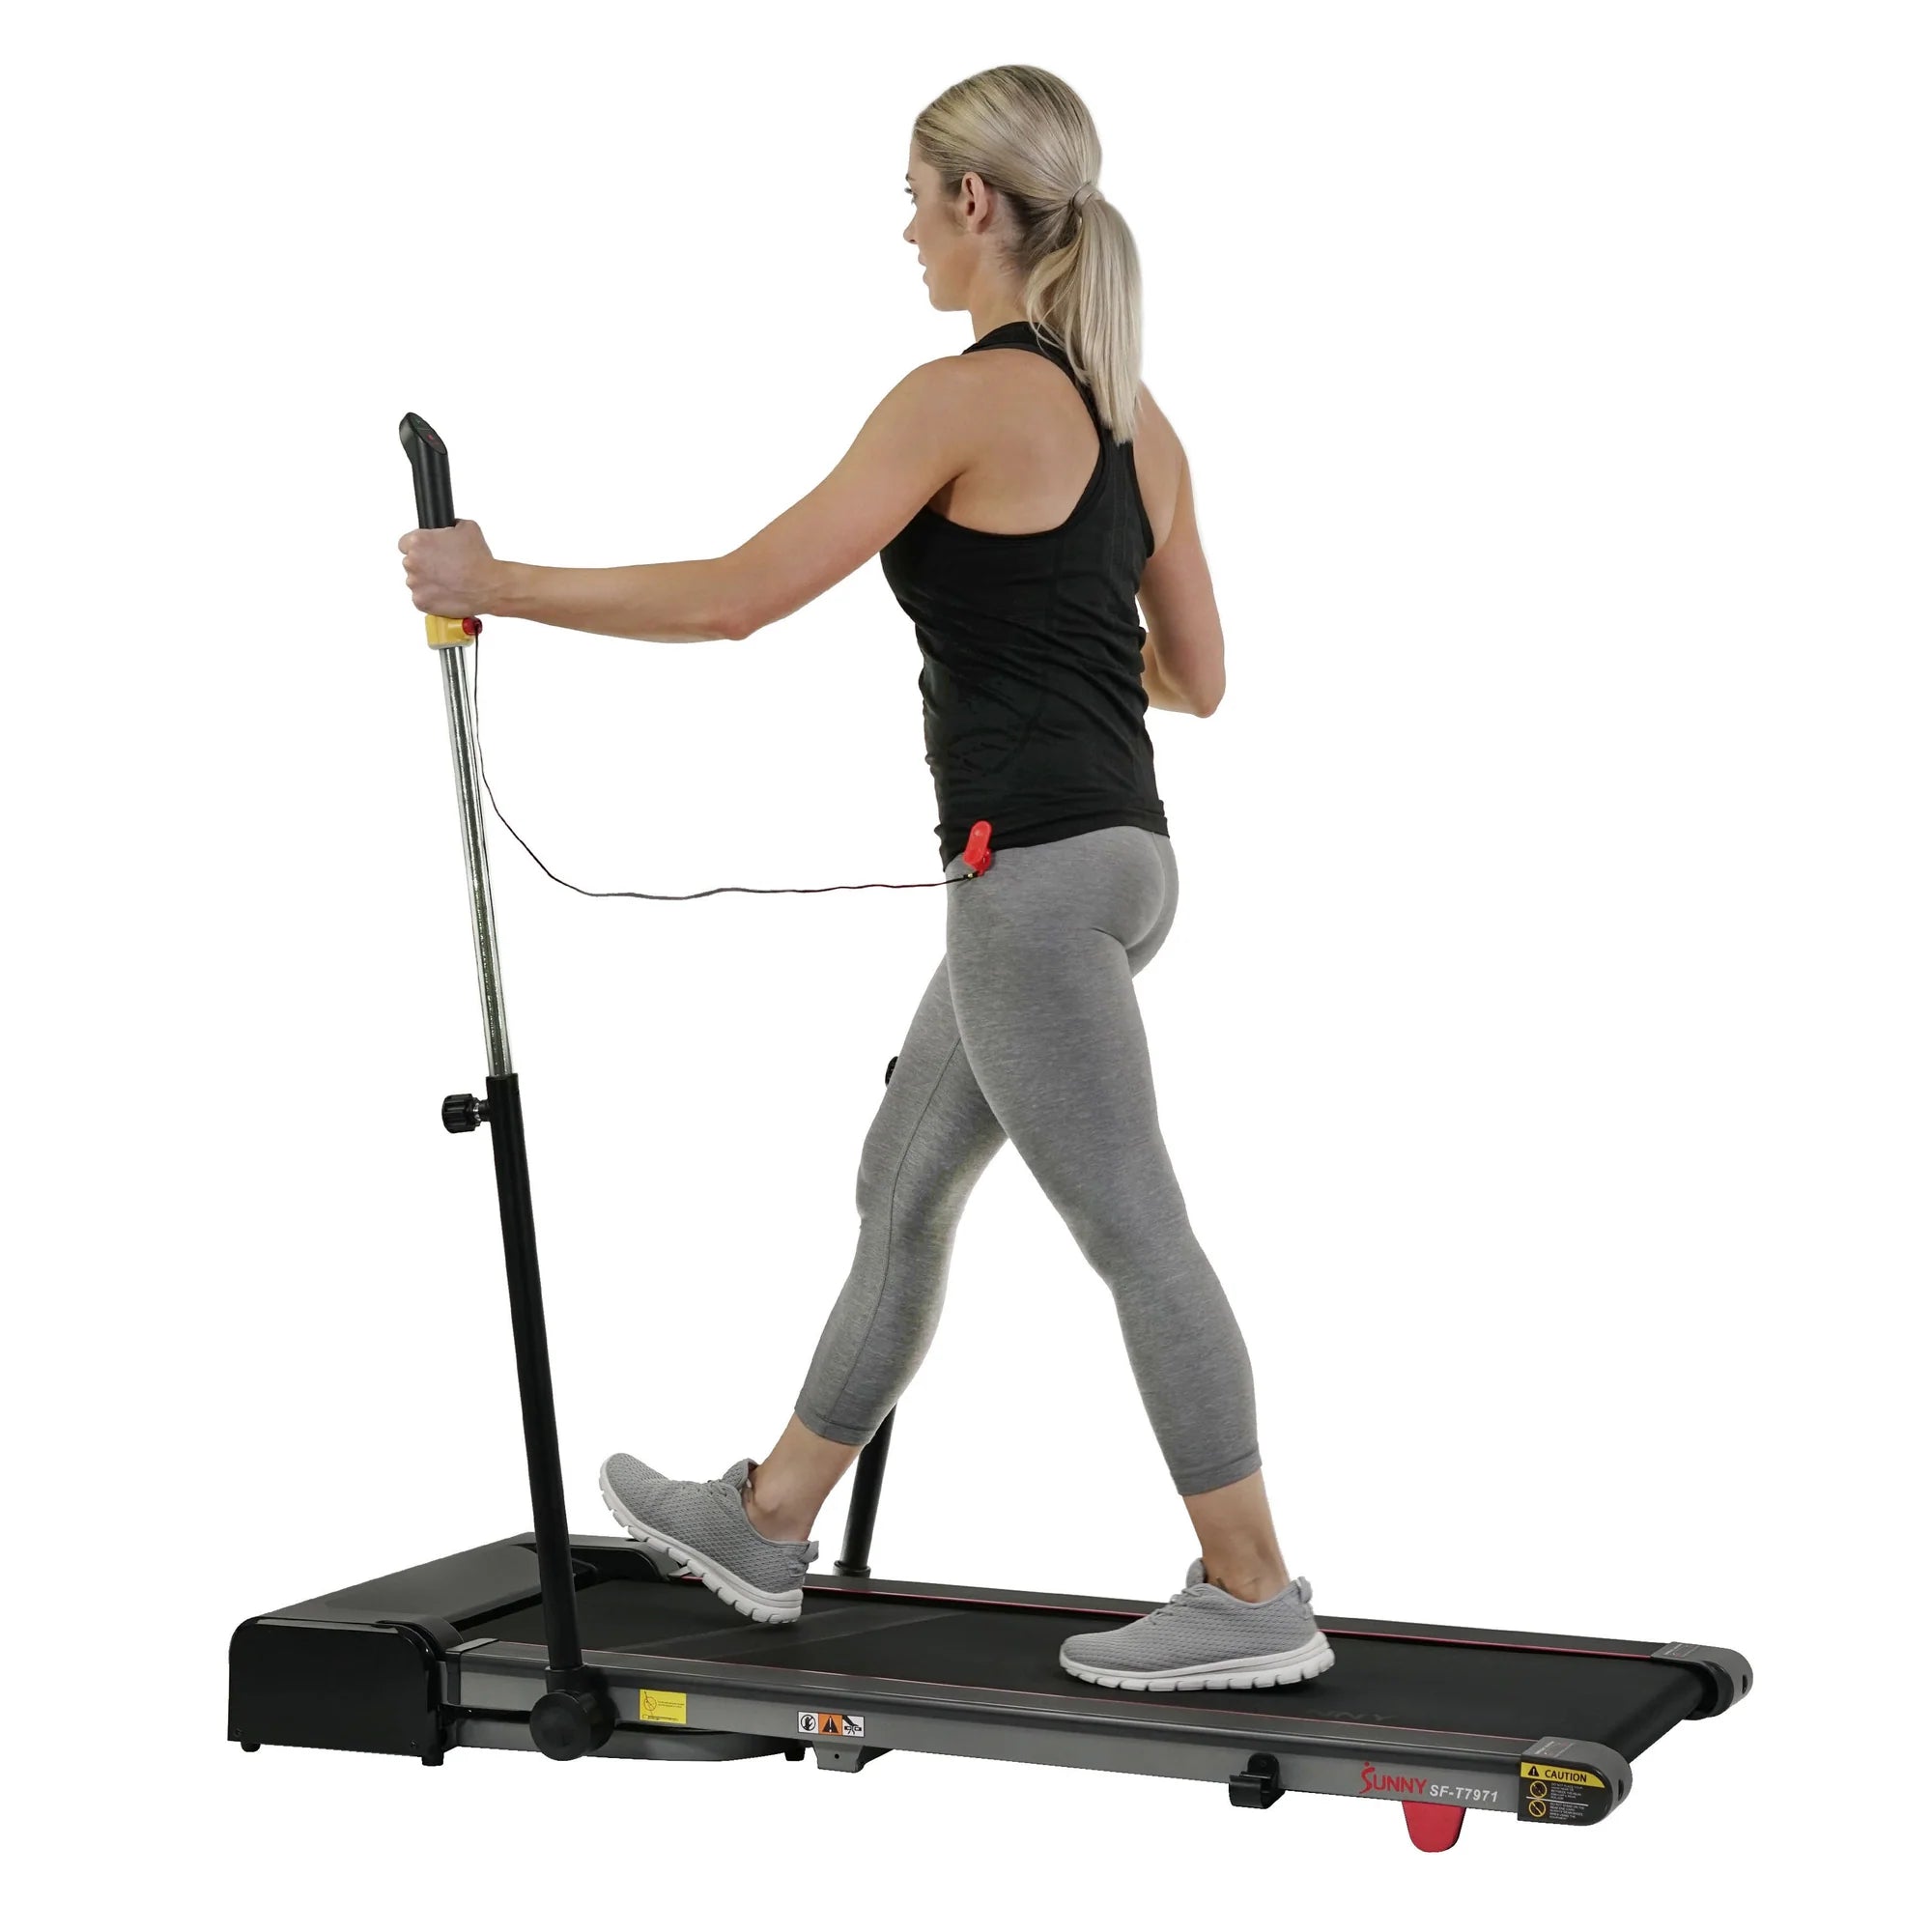 Sunny Health & Fitness Slim Folding Treadmill Trekpad - WellMed Supply